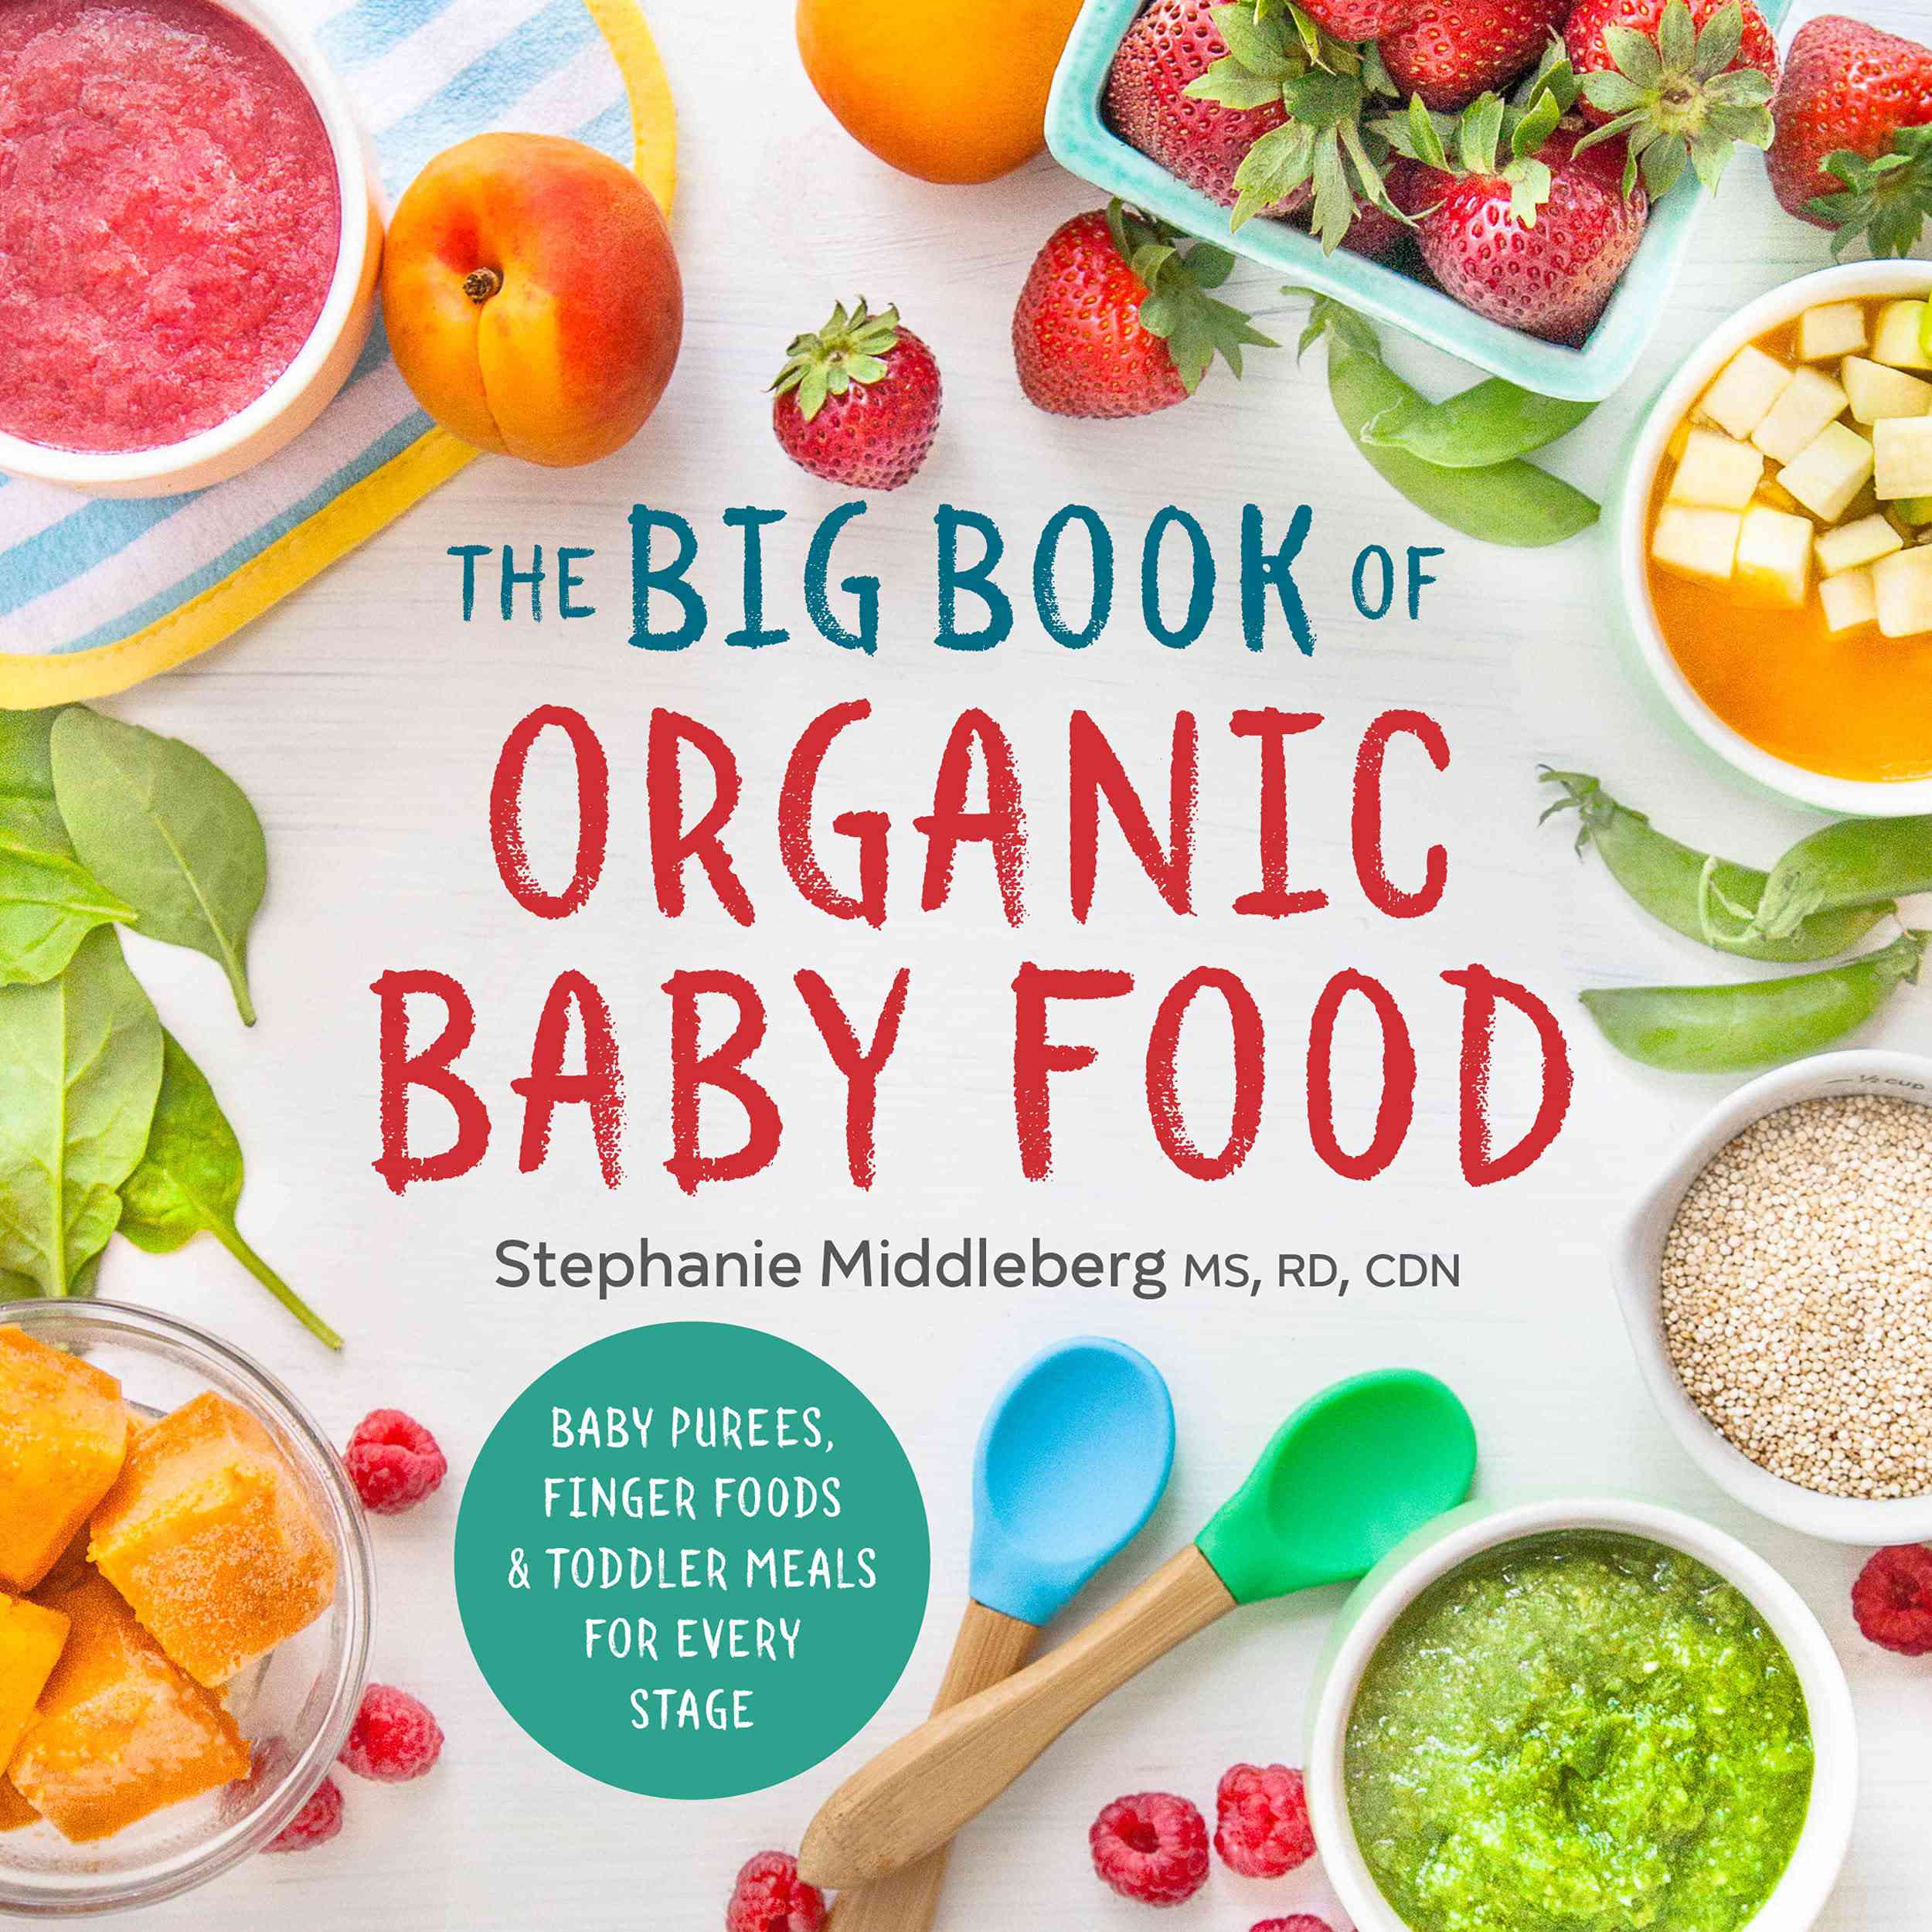 有机婴儿食品的大书:婴儿泥，手指食物，每个阶段的幼儿餐